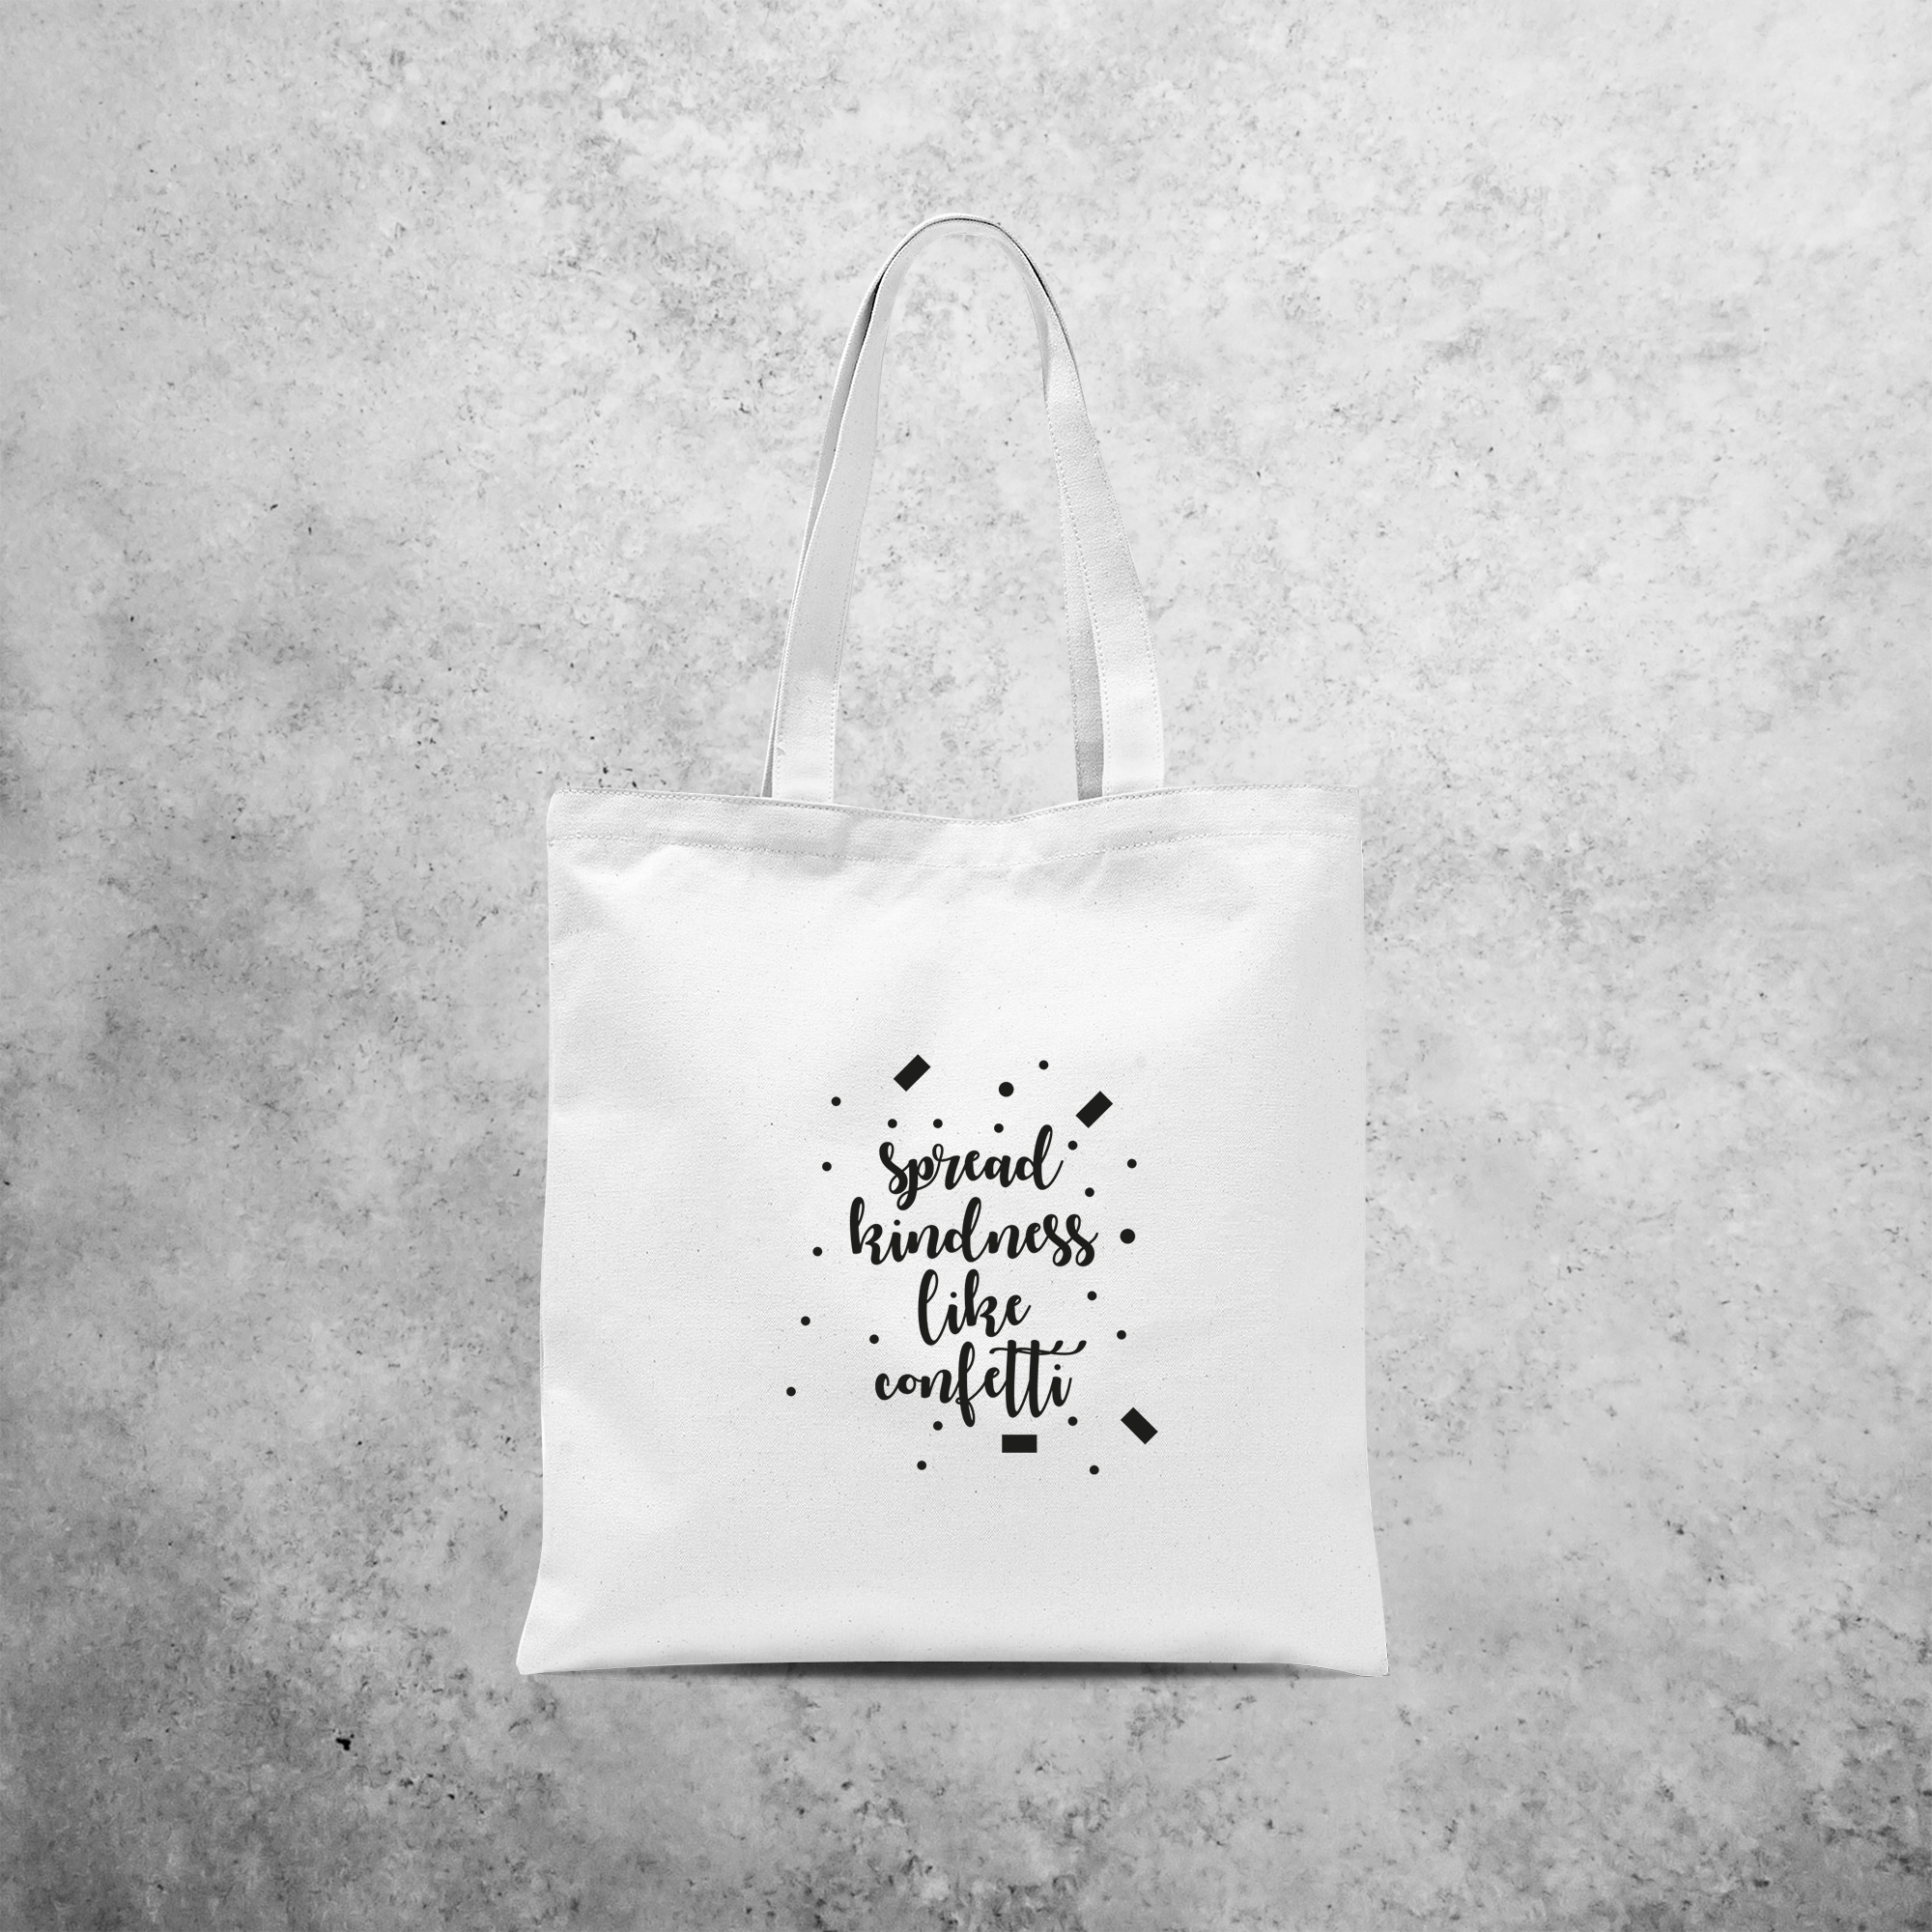 'Spread kindness like confetti' tote bag